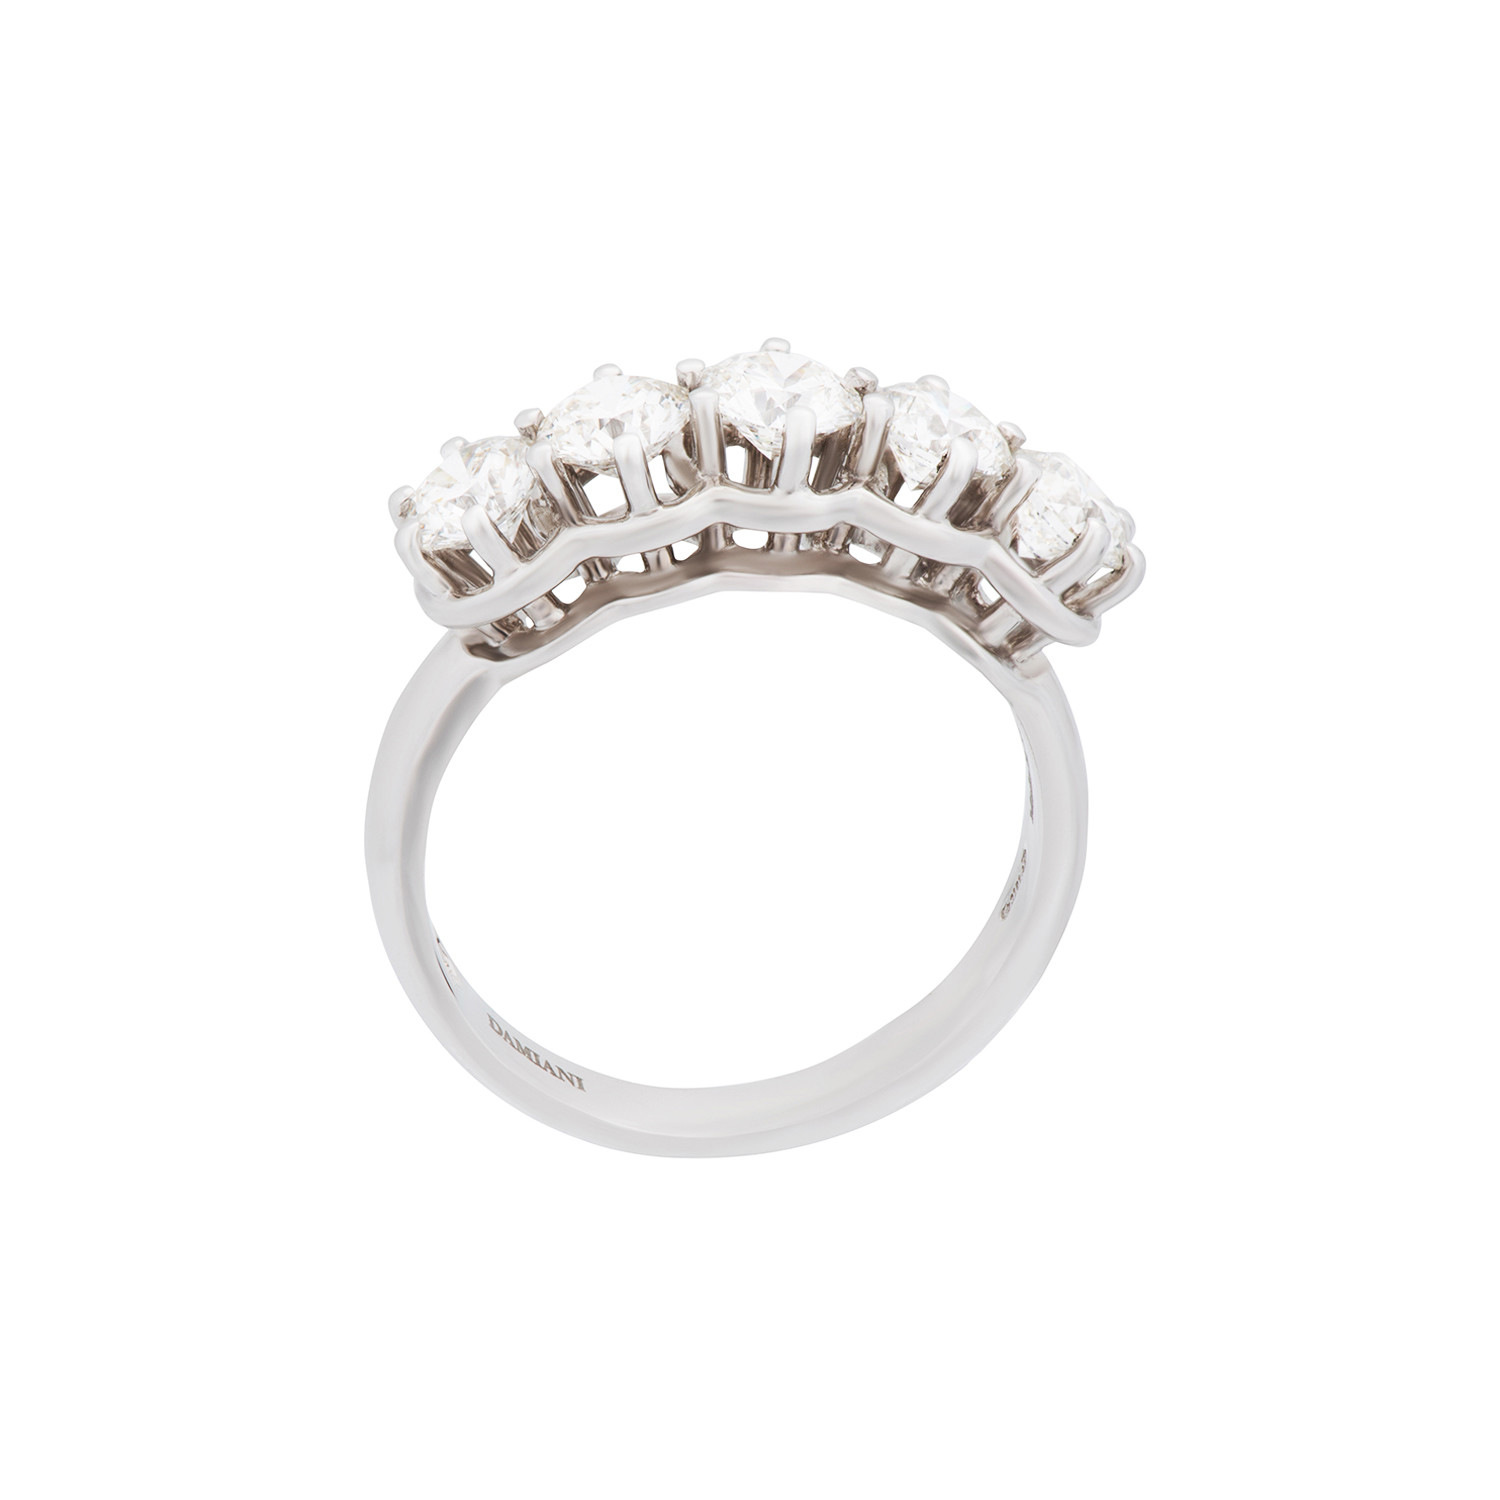 Damiani Luce 18k White Gold 5 Diamond Ring // Ring Size: 6.25 - Damiani